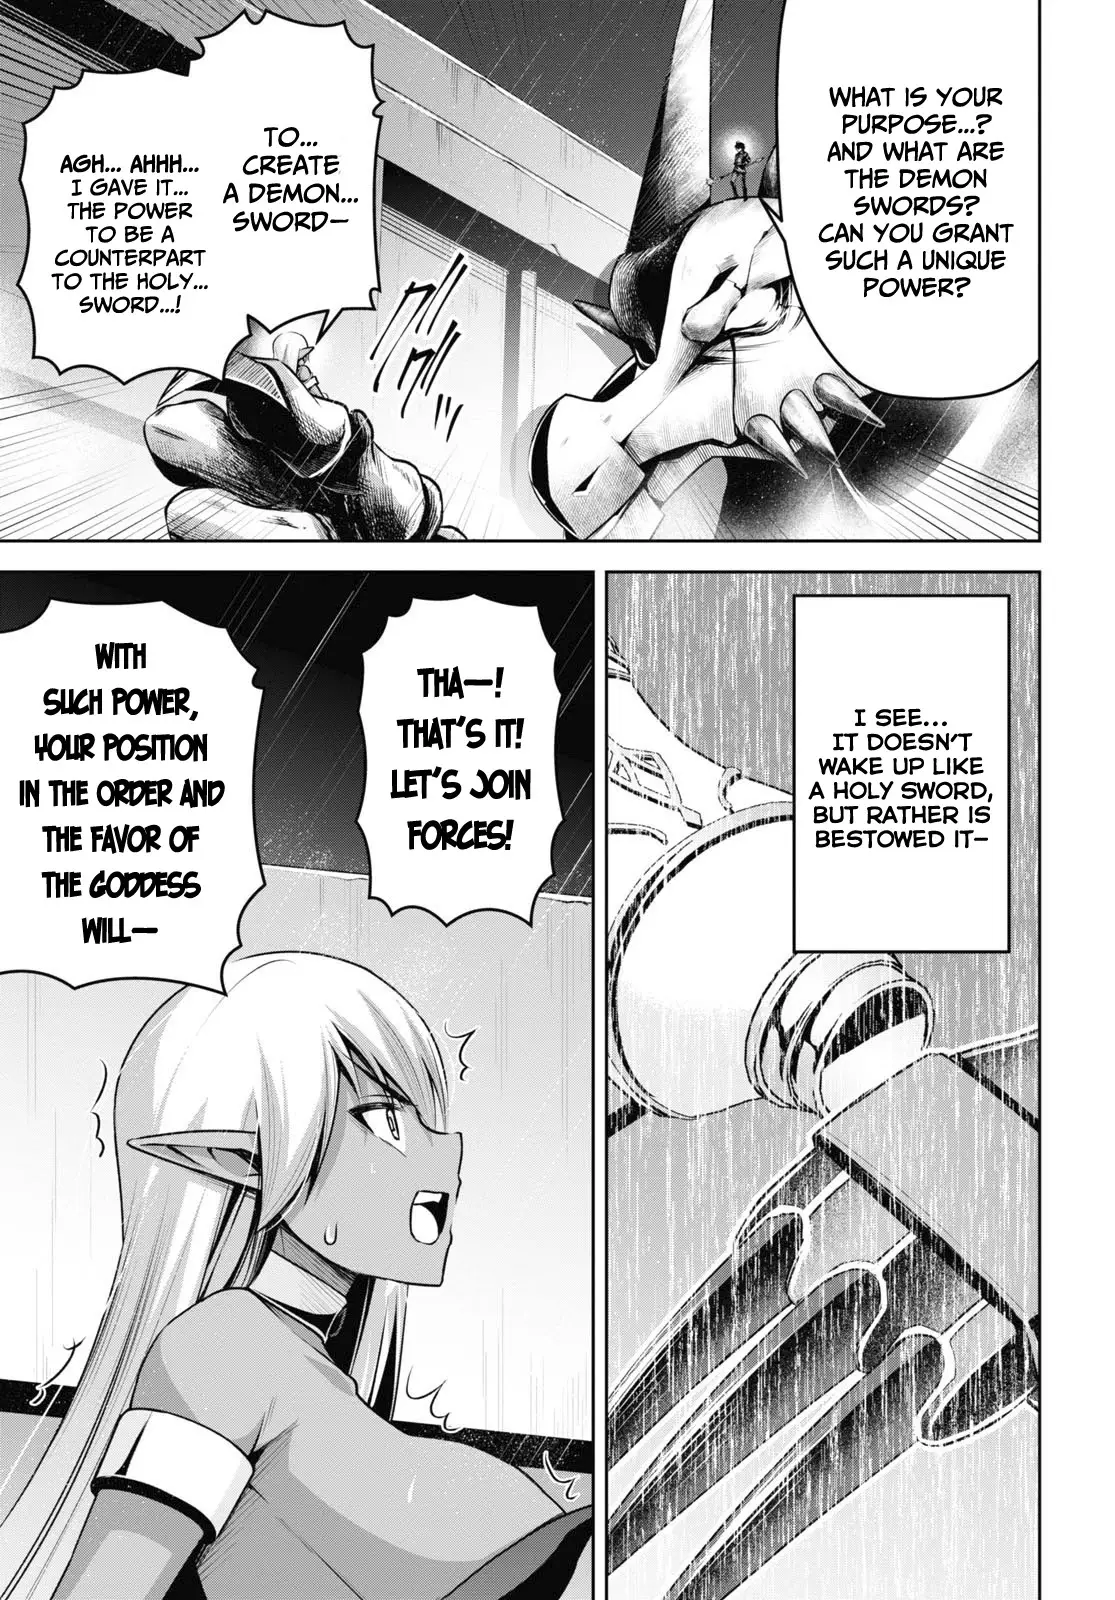 Demon's Sword Master Of Excalibur School - 19 page 20-8567225c